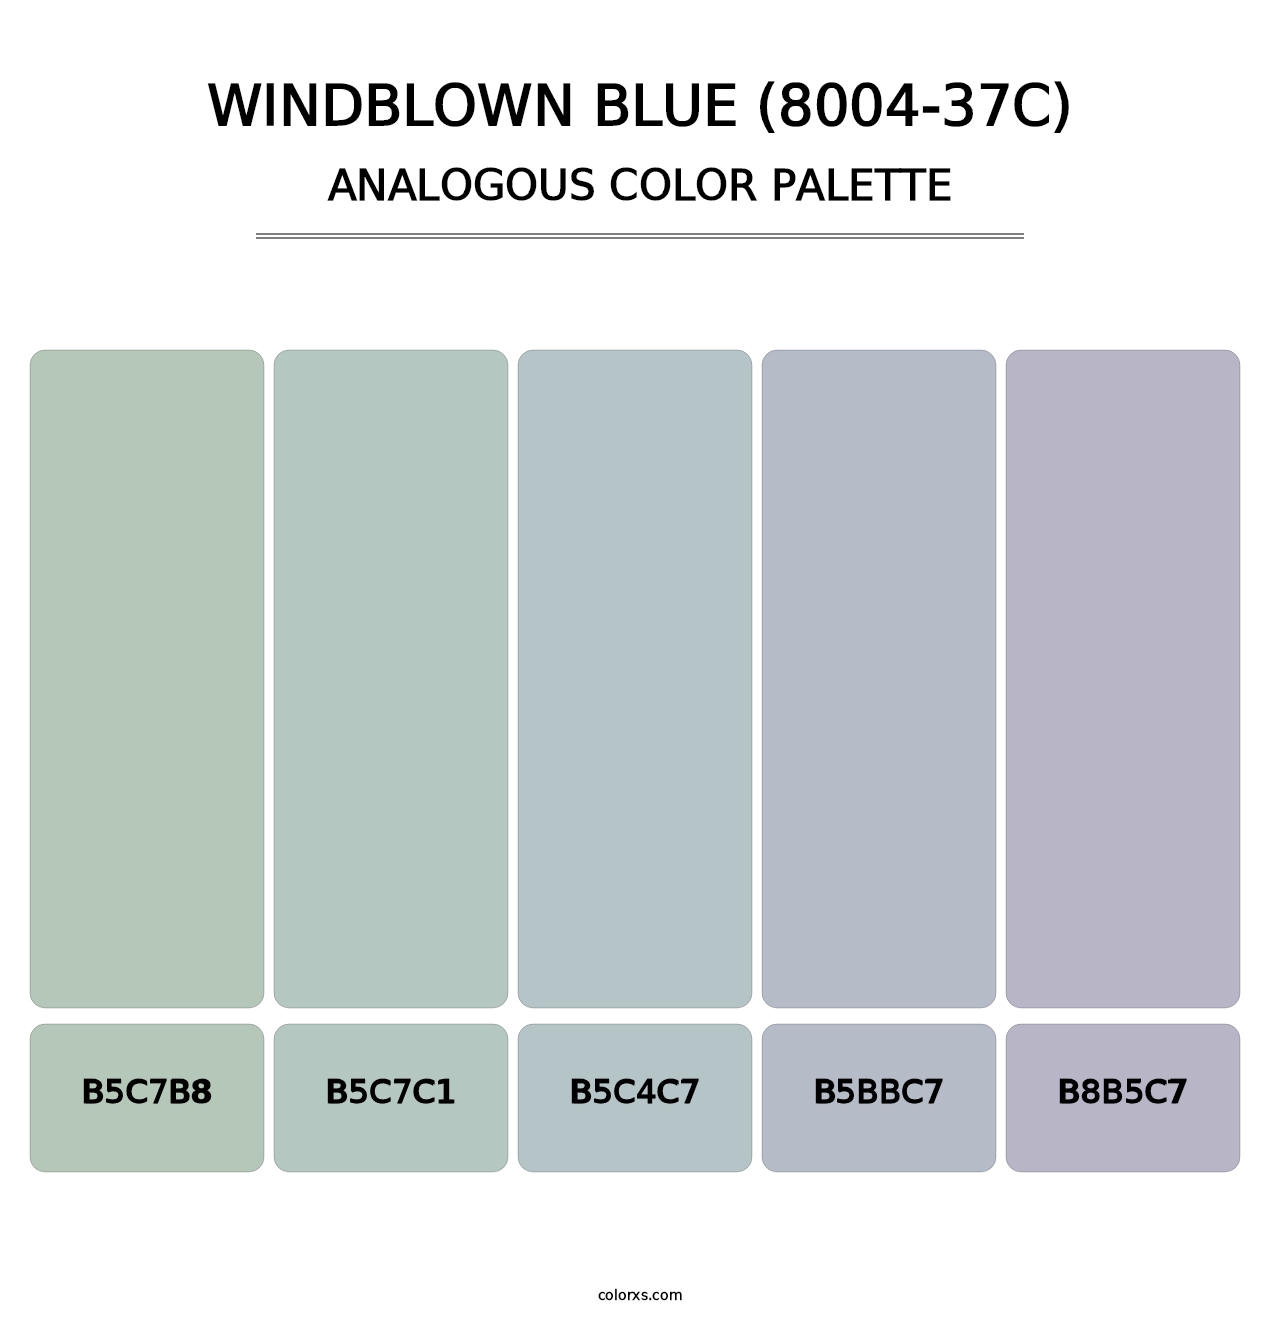 Windblown Blue (8004-37C) - Analogous Color Palette